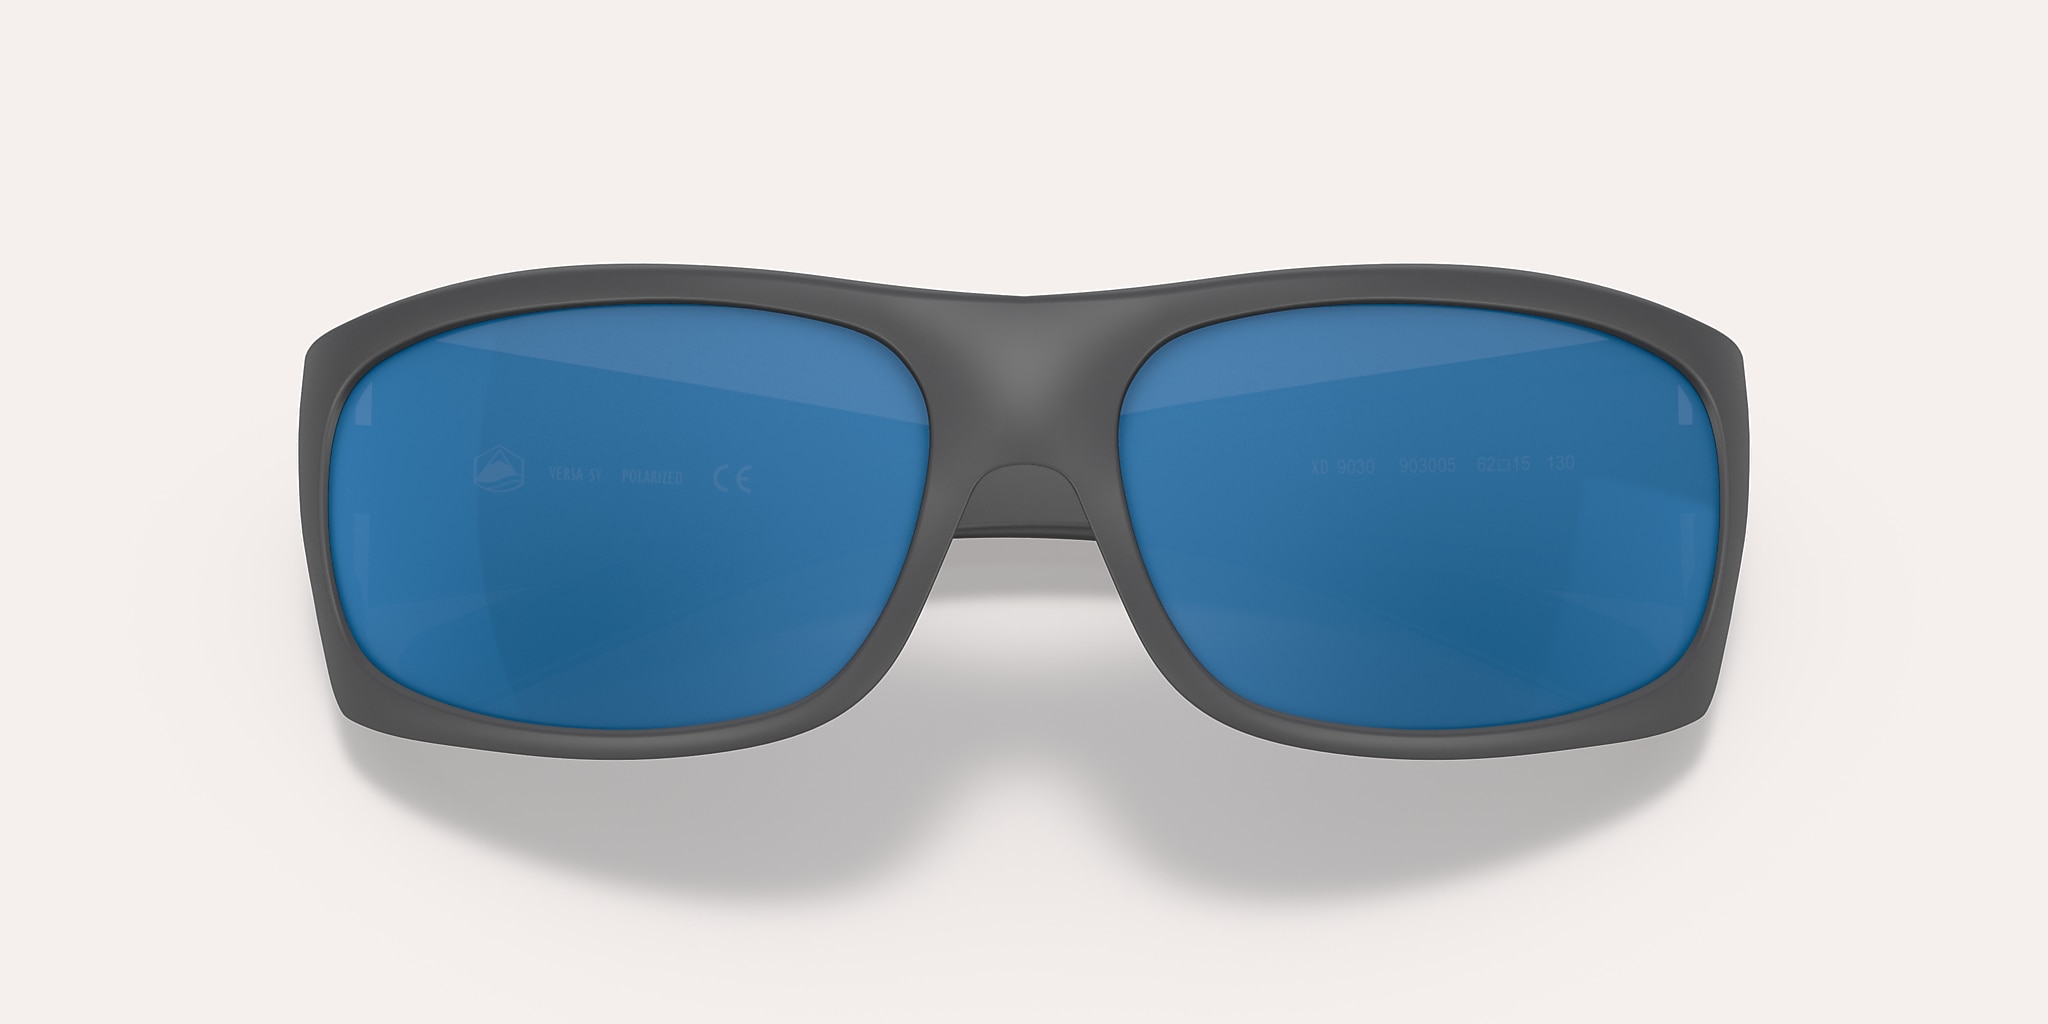 Polarized Sunglasses for Fishing Men Photochromic Glasses Night Vision Anti  Blue Light Eyeglasses-V148